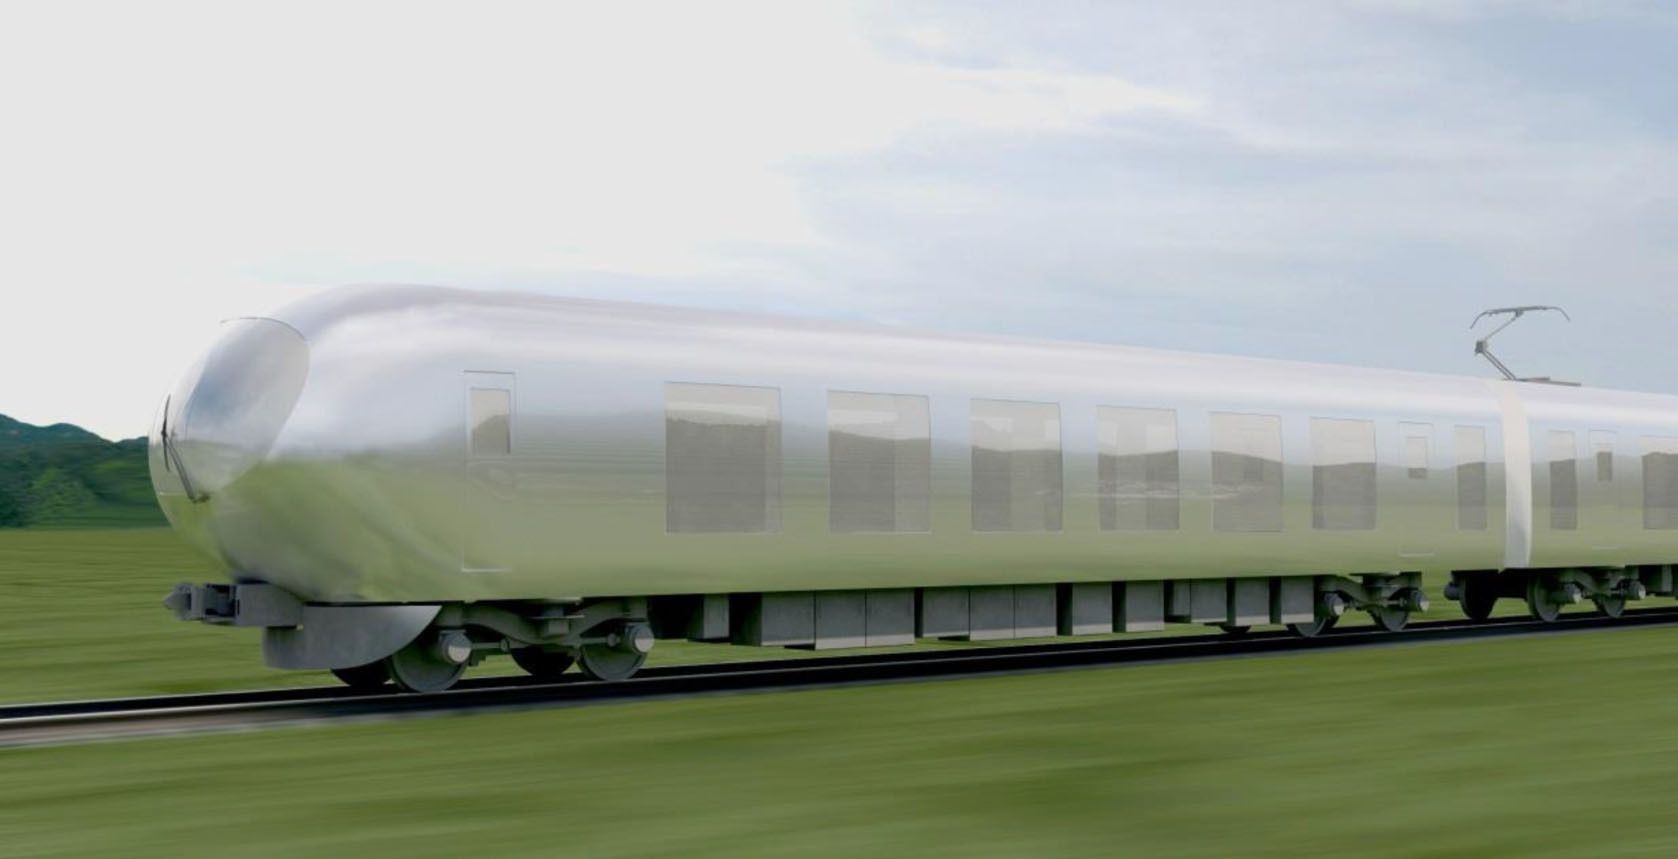 Le Japon aura bientôt des trains invisibles #2